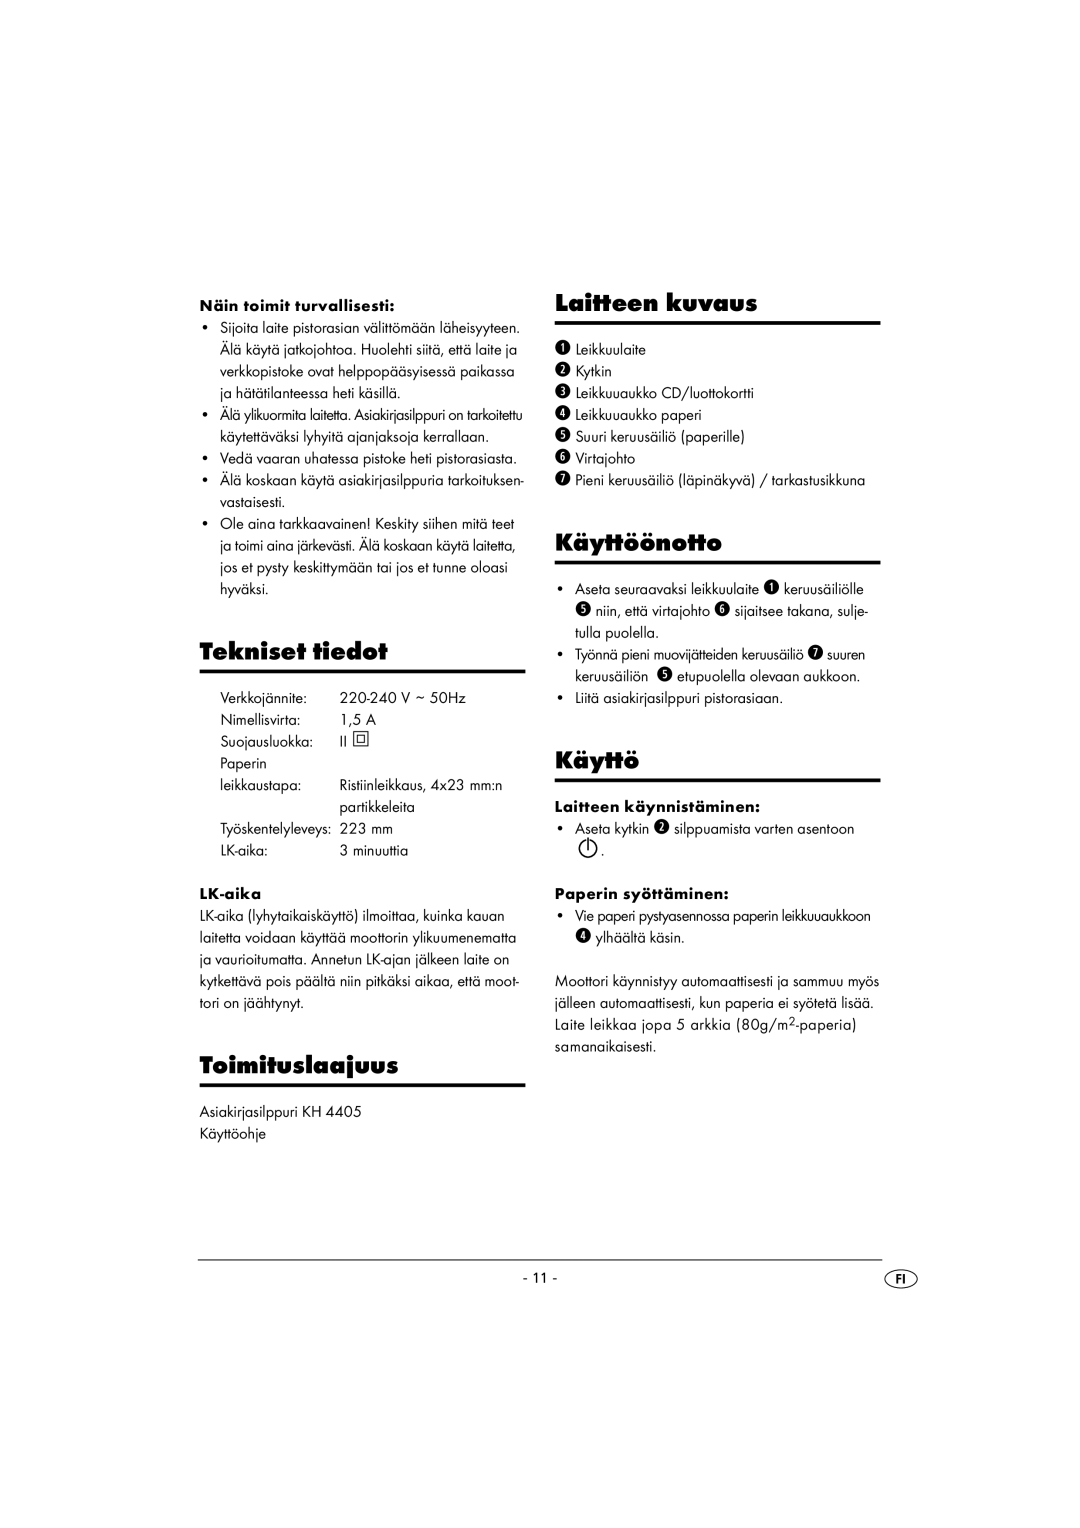 Kompernass KH 4405 manual Tekniset tiedot, Toimituslaajuus, Laitteen kuvaus, Käyttöönotto 